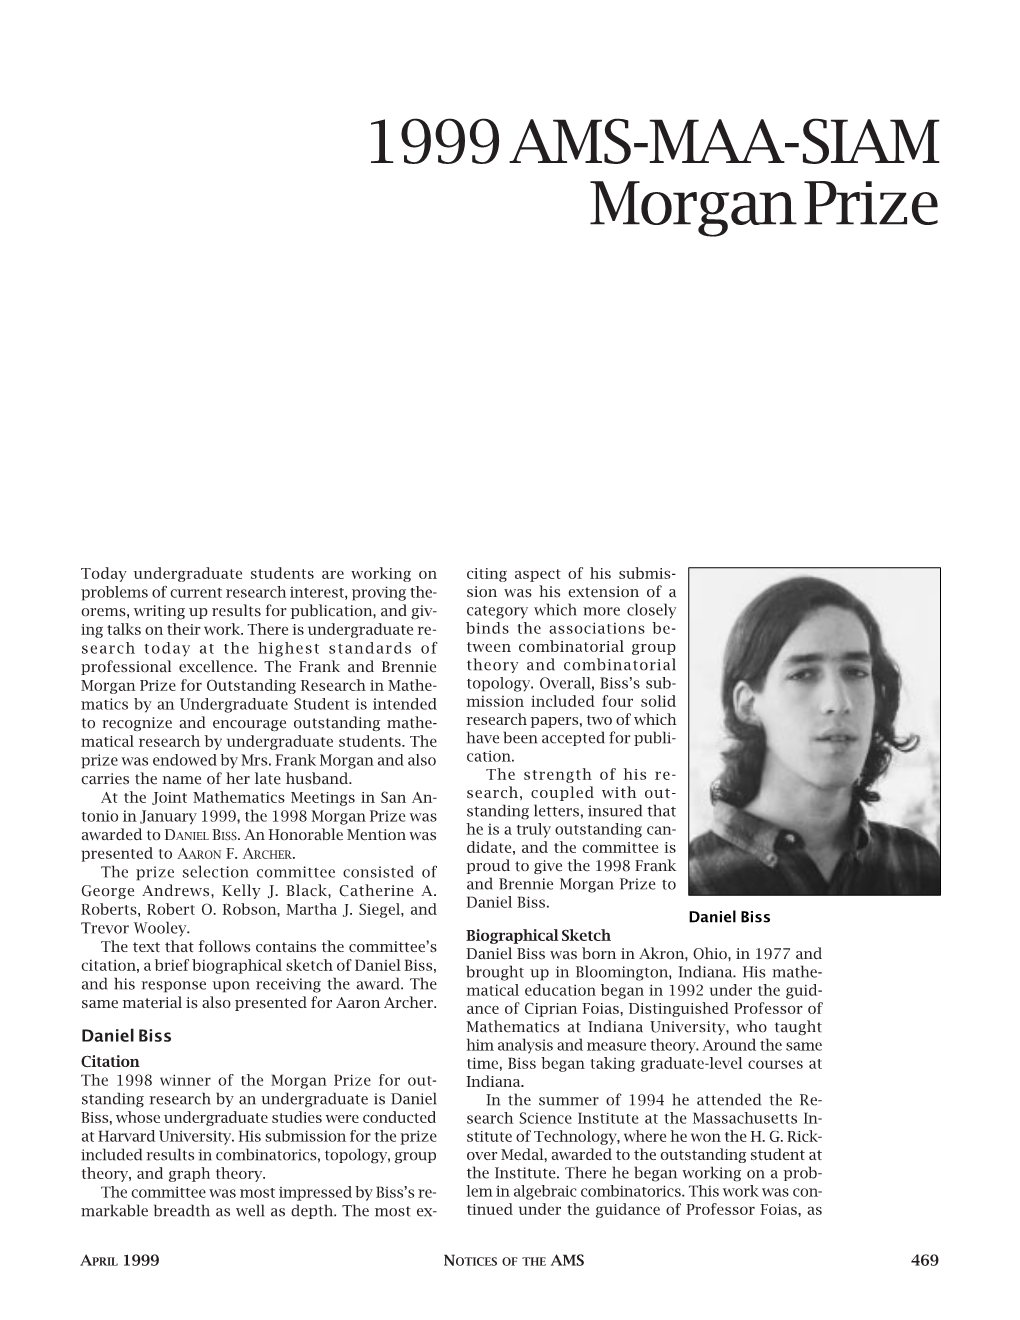 1999 AMS MAA-SIAM Morgan Prize